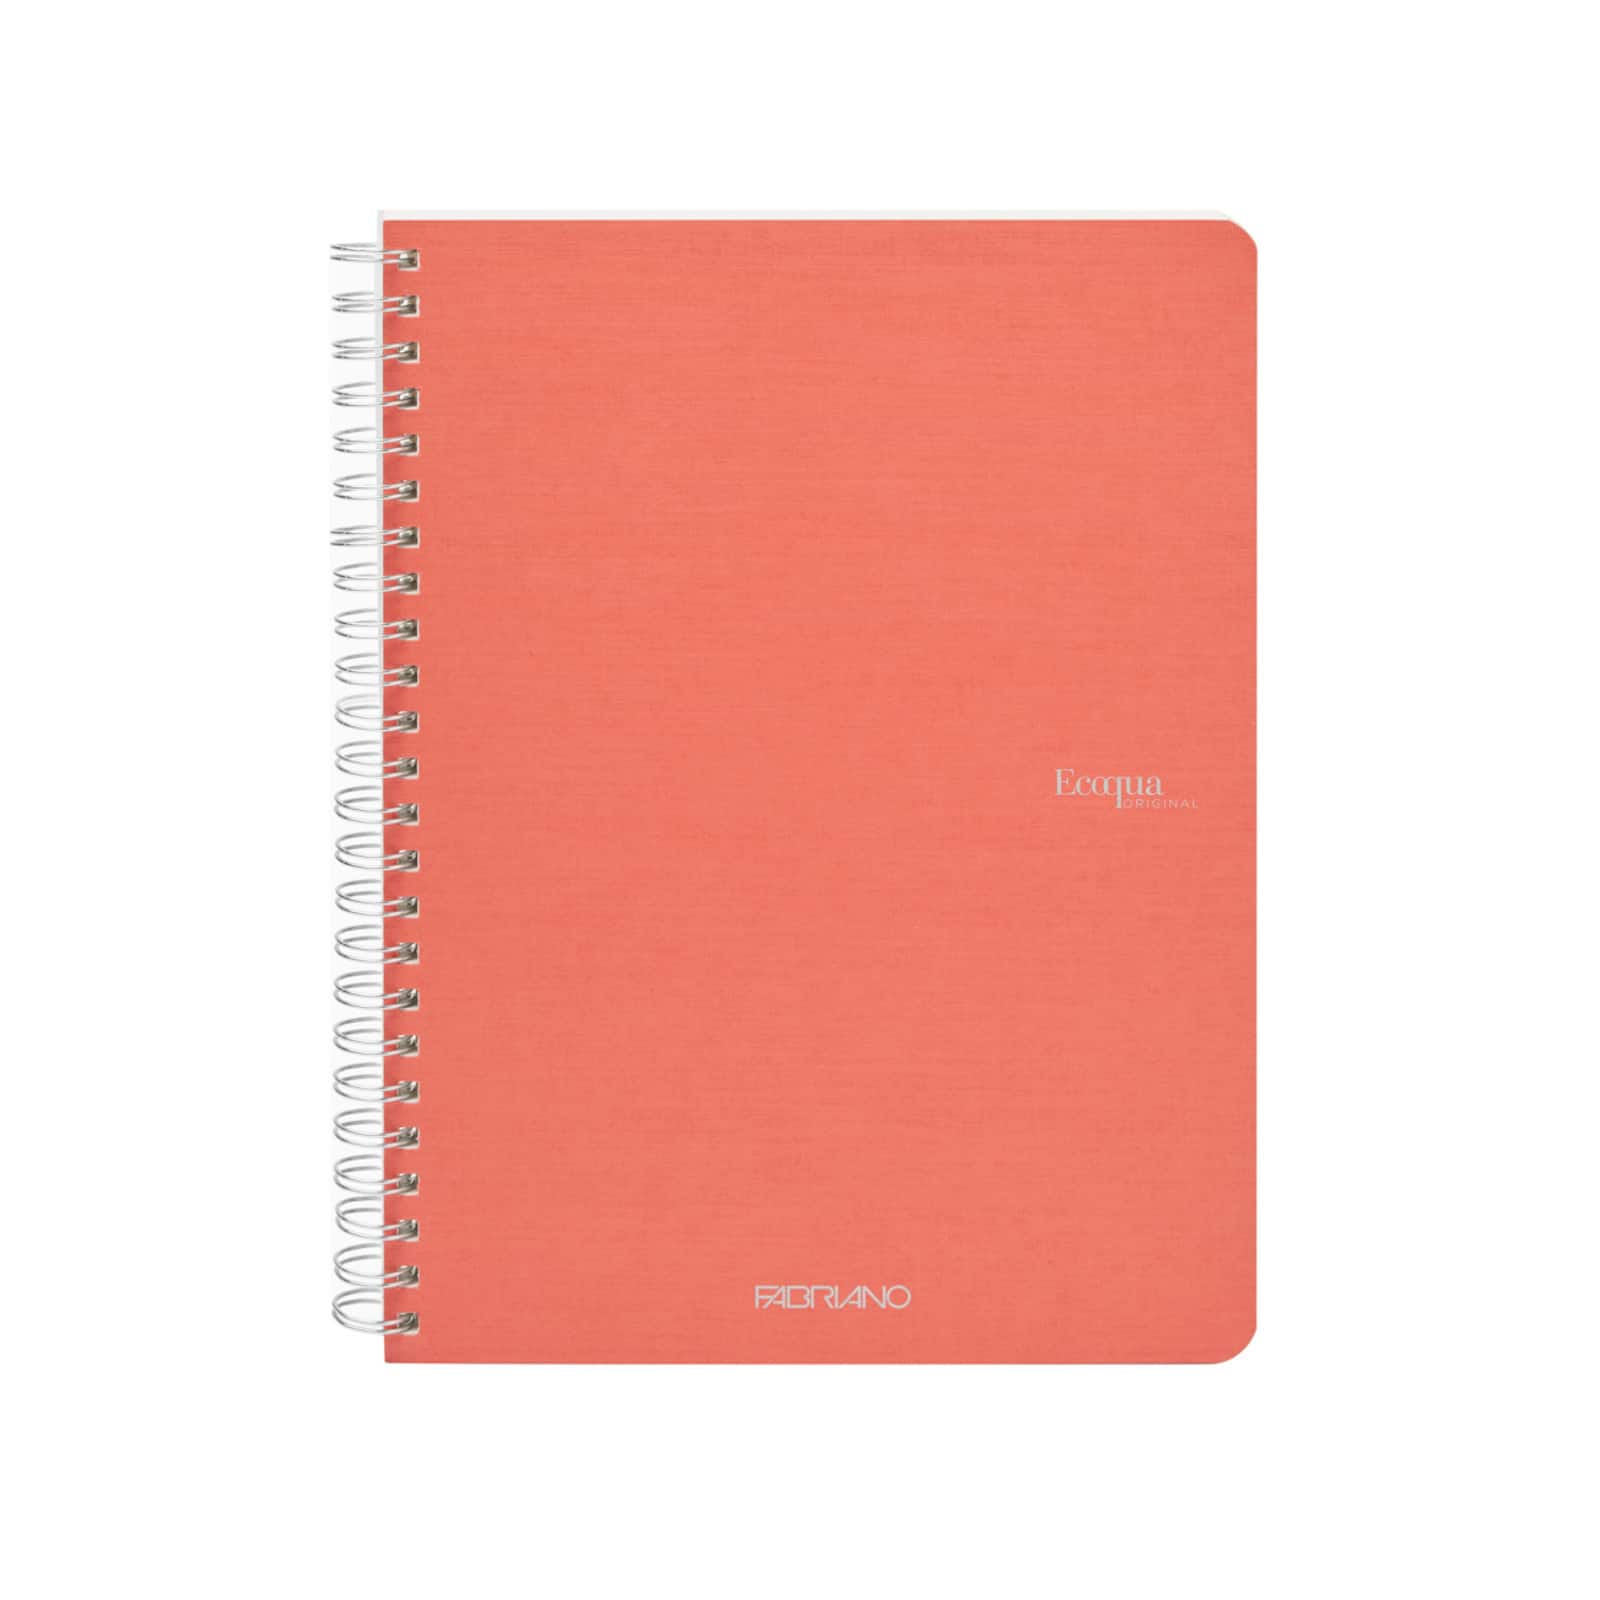 8-Pack Inspirational Notebook 5x8 Journal, Motivational Kraft Paper Journals, A5 Lined Happy Theme, Bulk Set, Art Journals, Teacher Notebook for